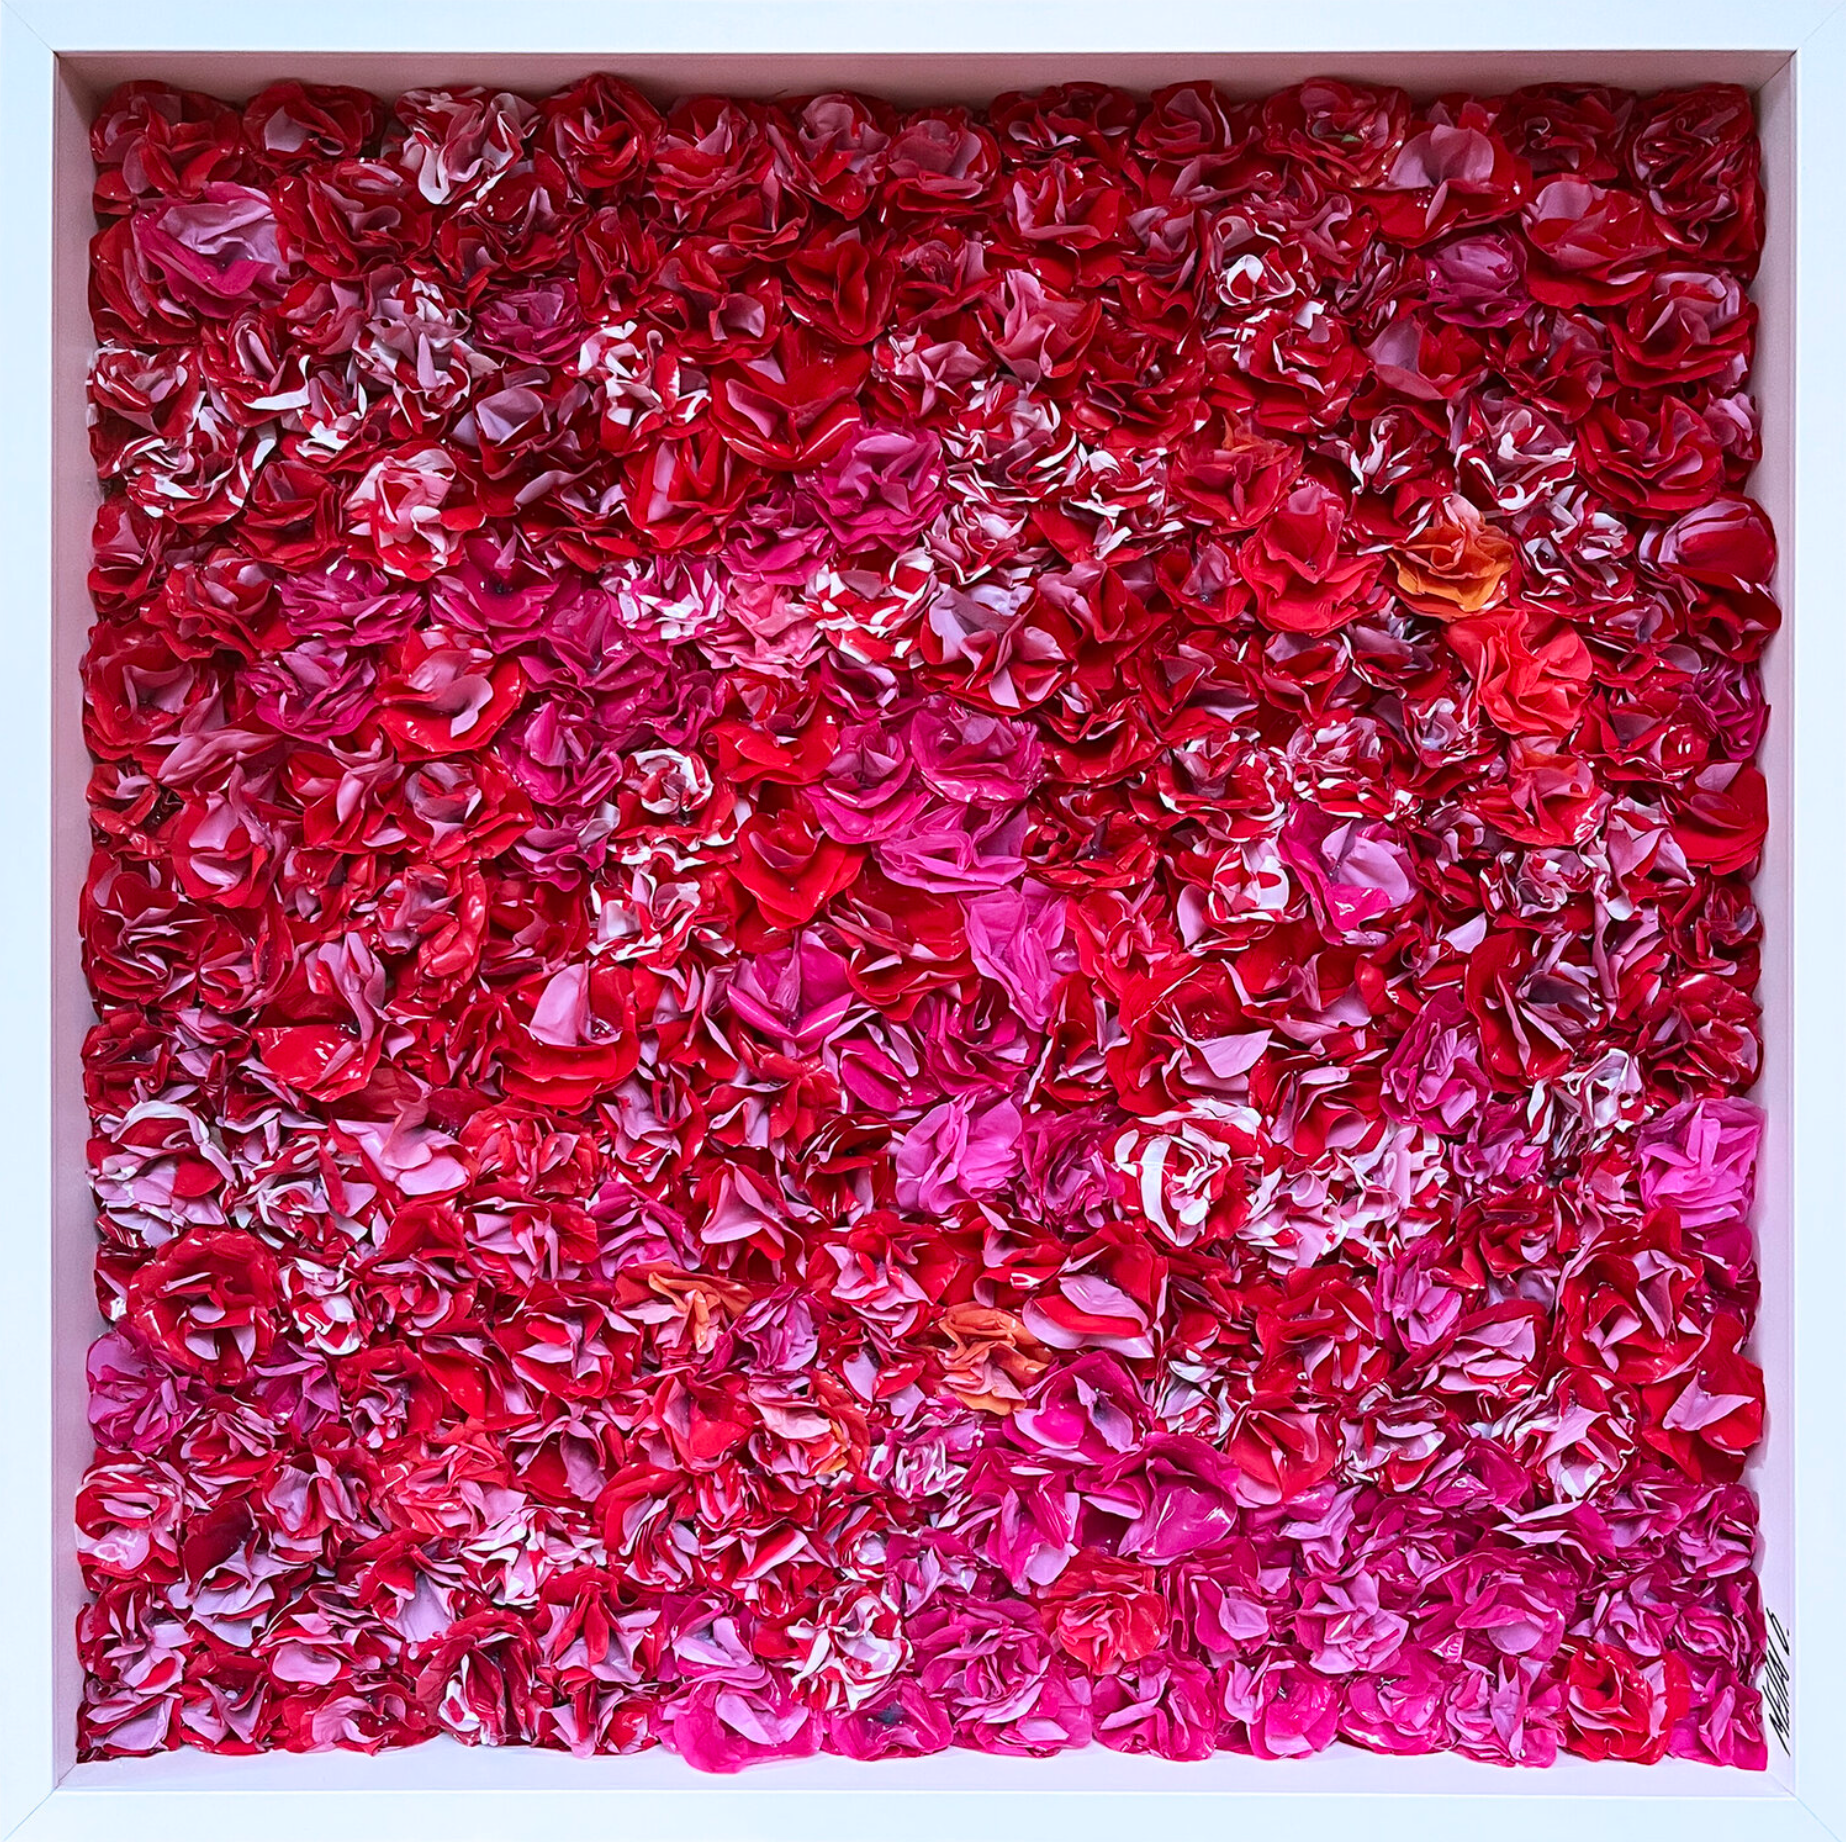 Oliver Messas "Passione..." Collage, pittura astratta di fiori rossi.